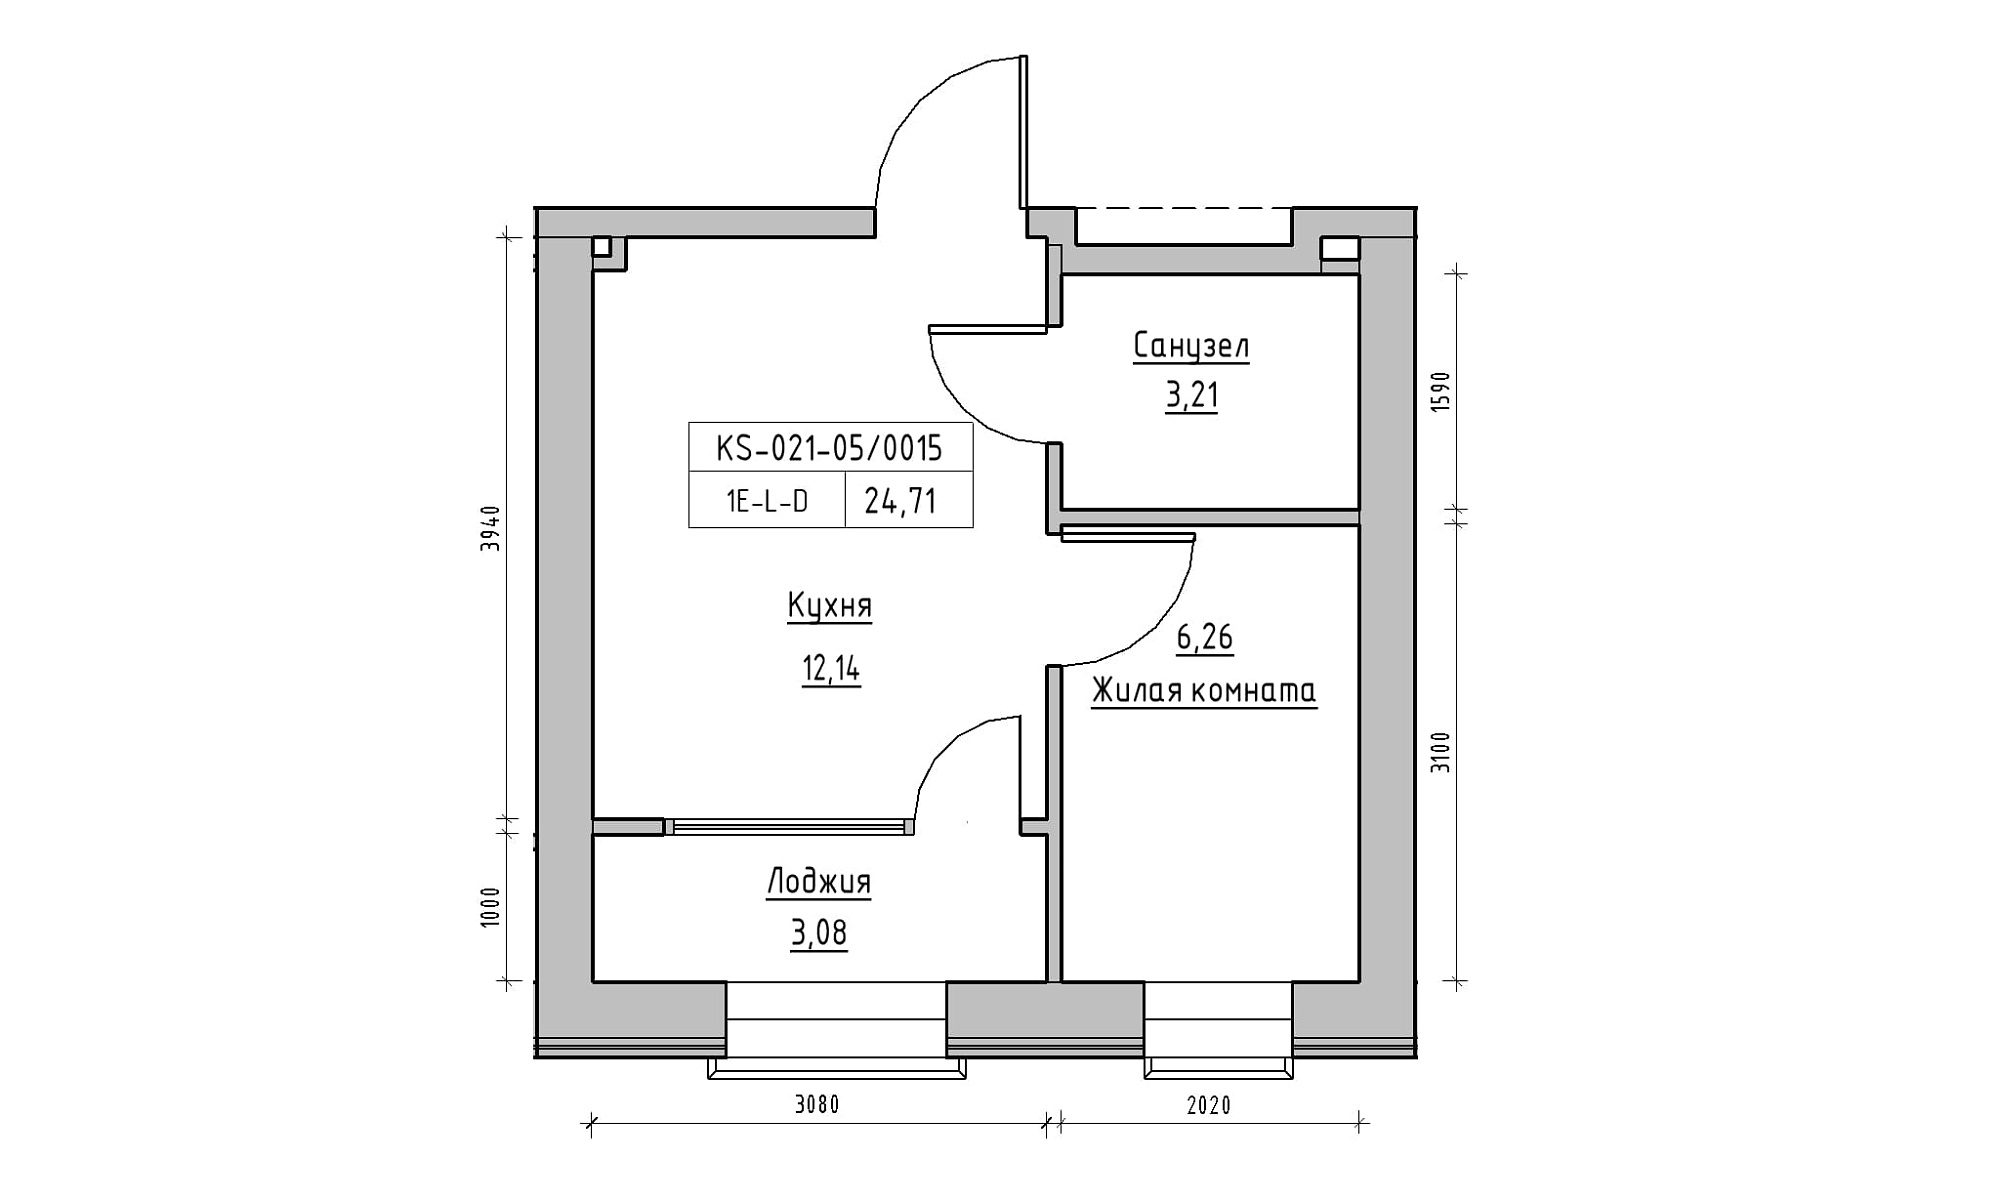 Планировка 1-к квартира площей 24.71м2, KS-021-05/0015.